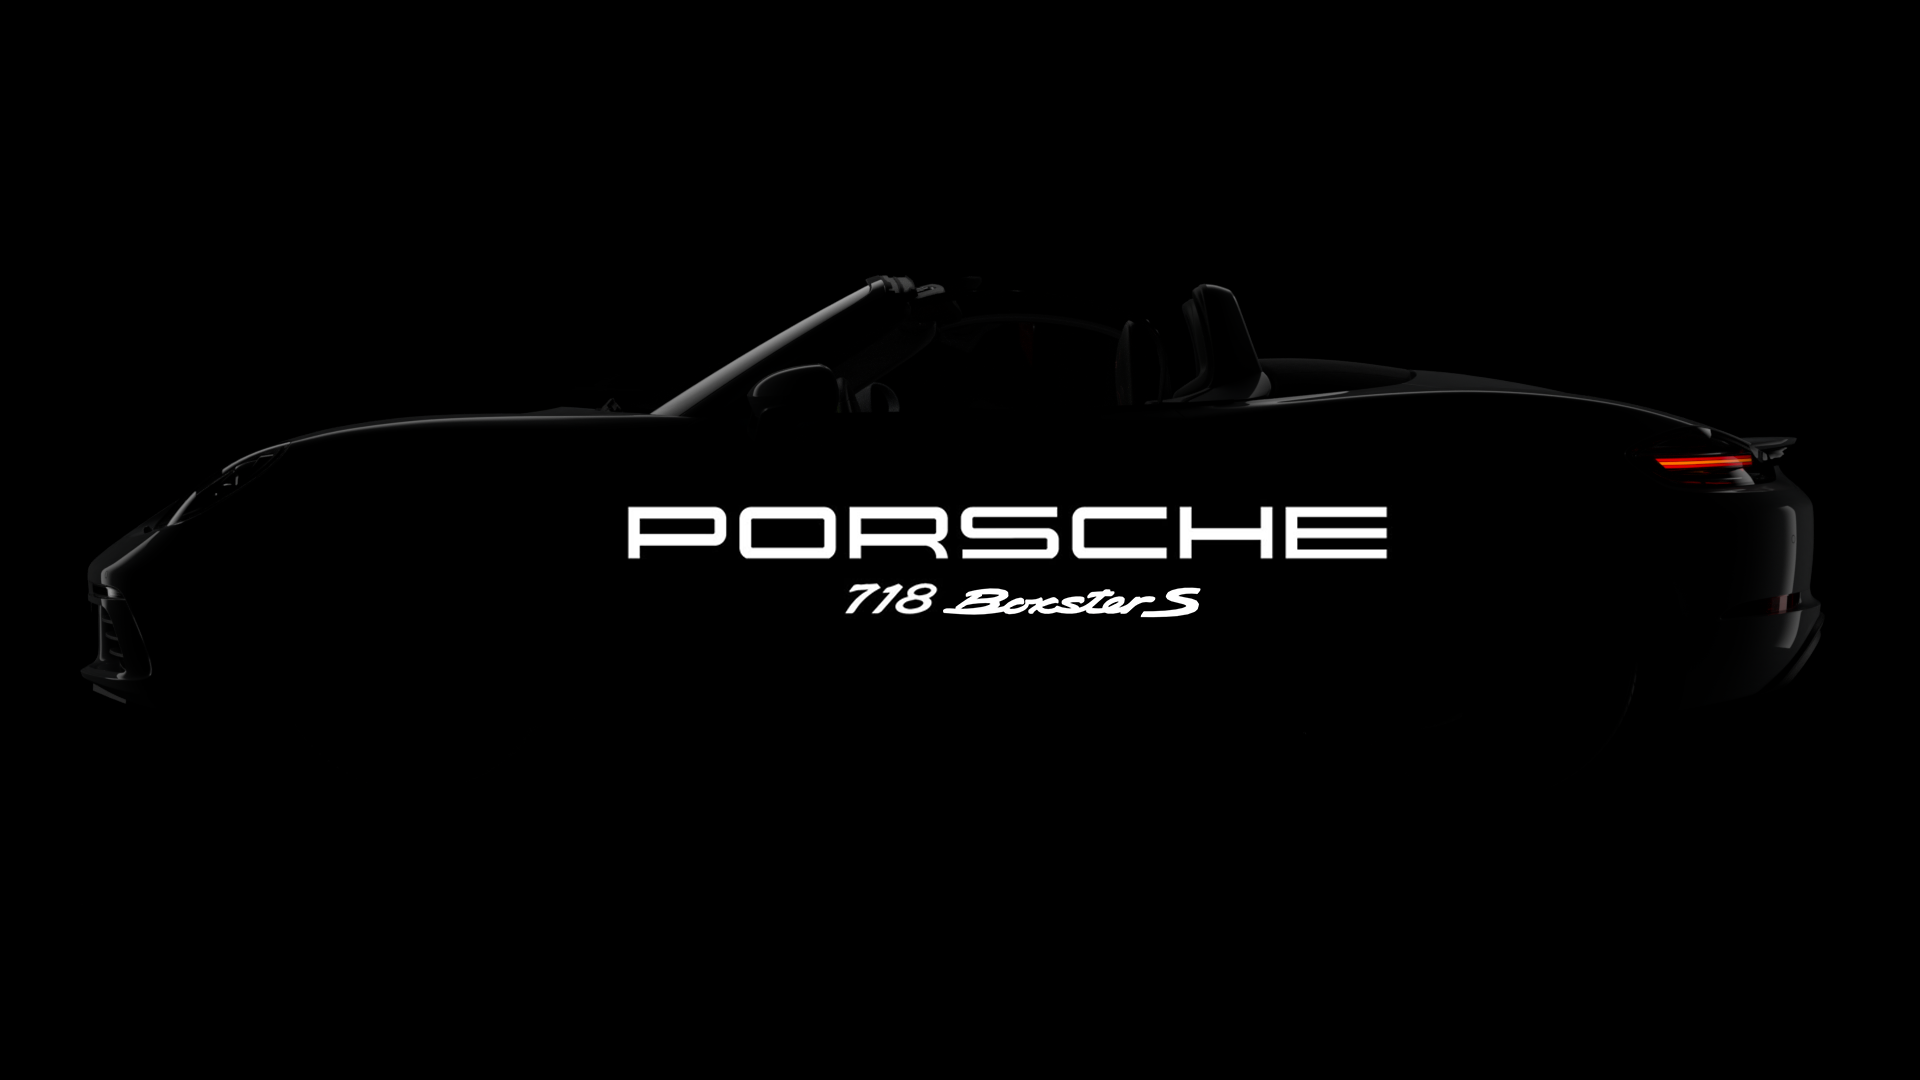 Porsche 718 boxster s CGI